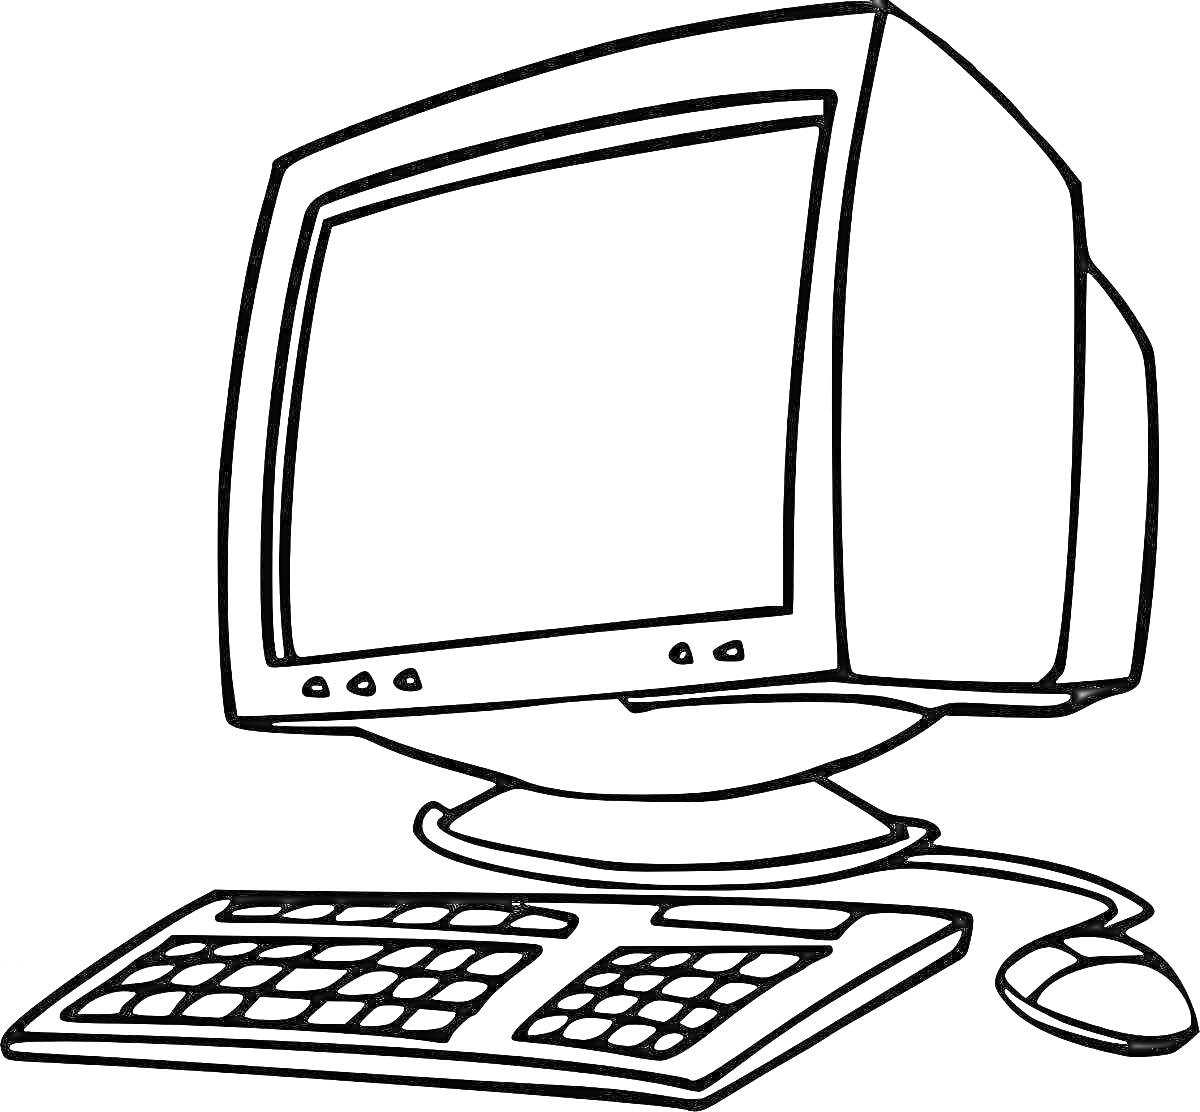 На раскраске изображено: Компьютер, Монитор, Клавиатура, Мышь, Техника, Обучение, Для детей